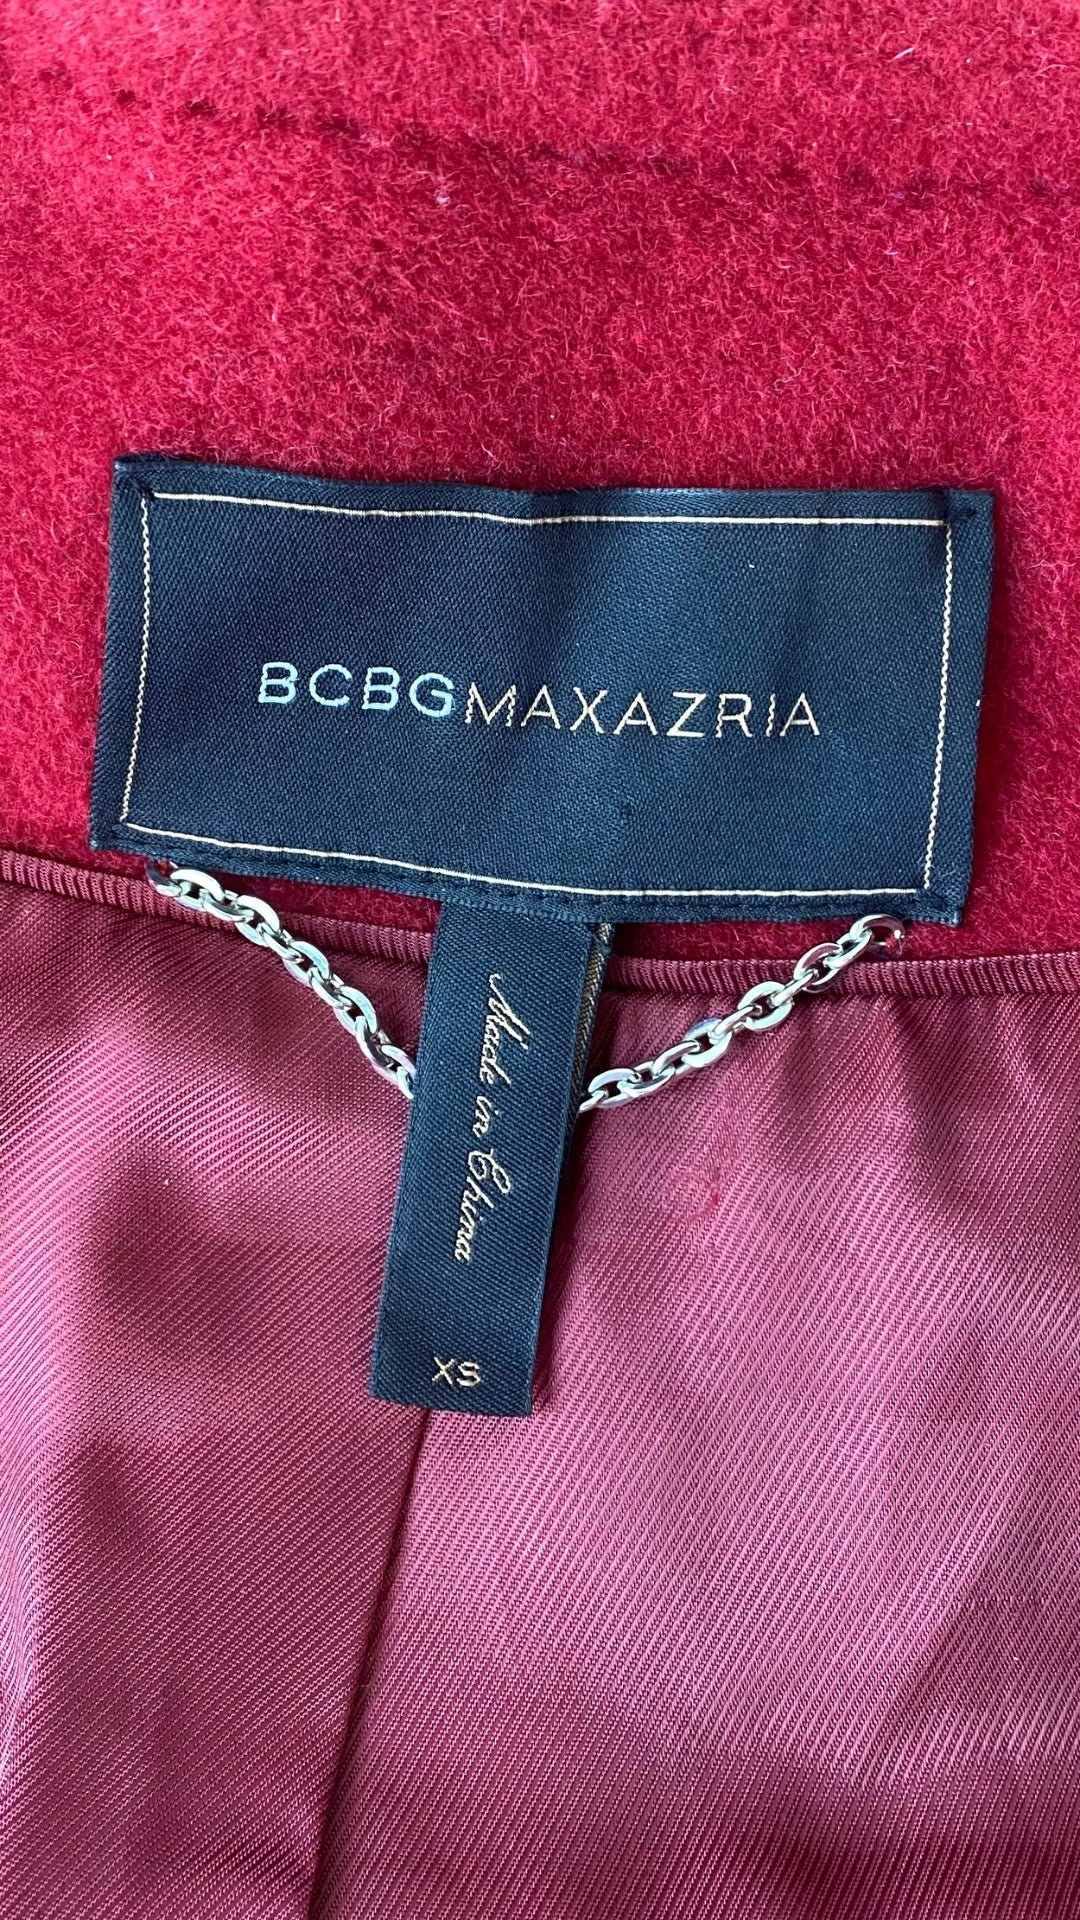 Manteau assez long en lainage rouge, manches ballons, BCBGMAXAZRIA, vue de  l'étiquette de marque et taille.